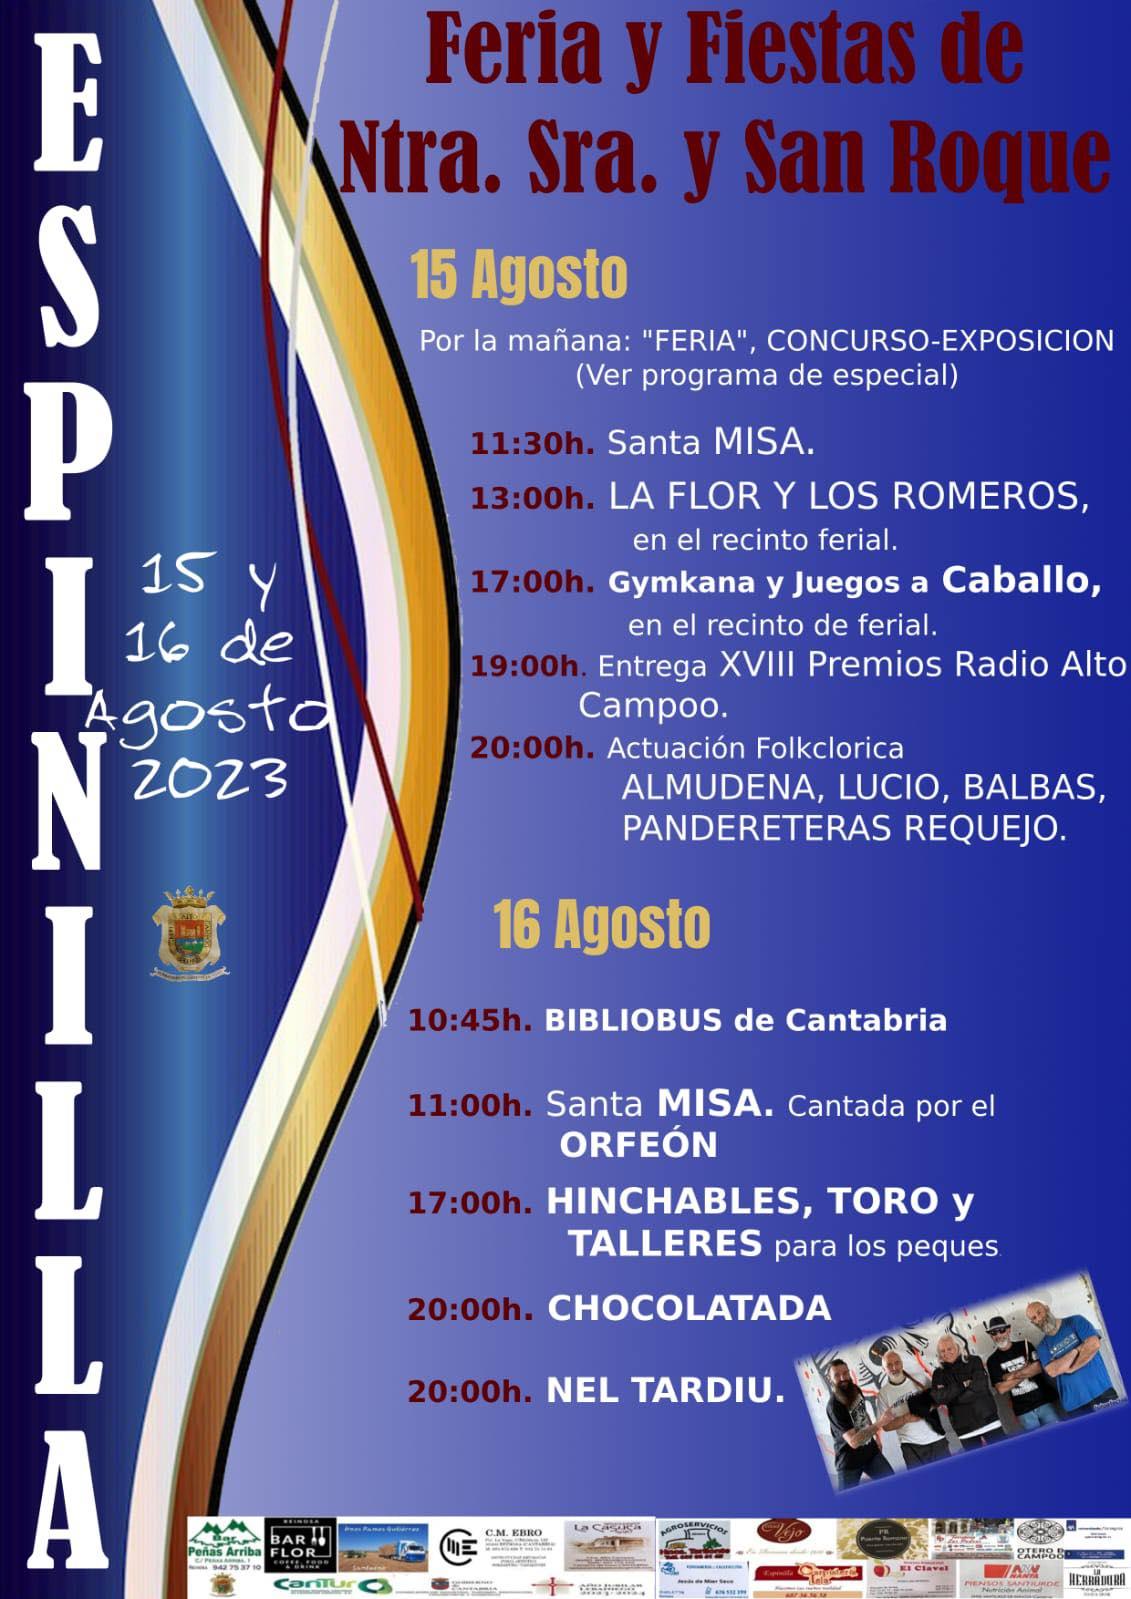 Fiestas de Ntra. Señora y San Roque Espinilla 2023